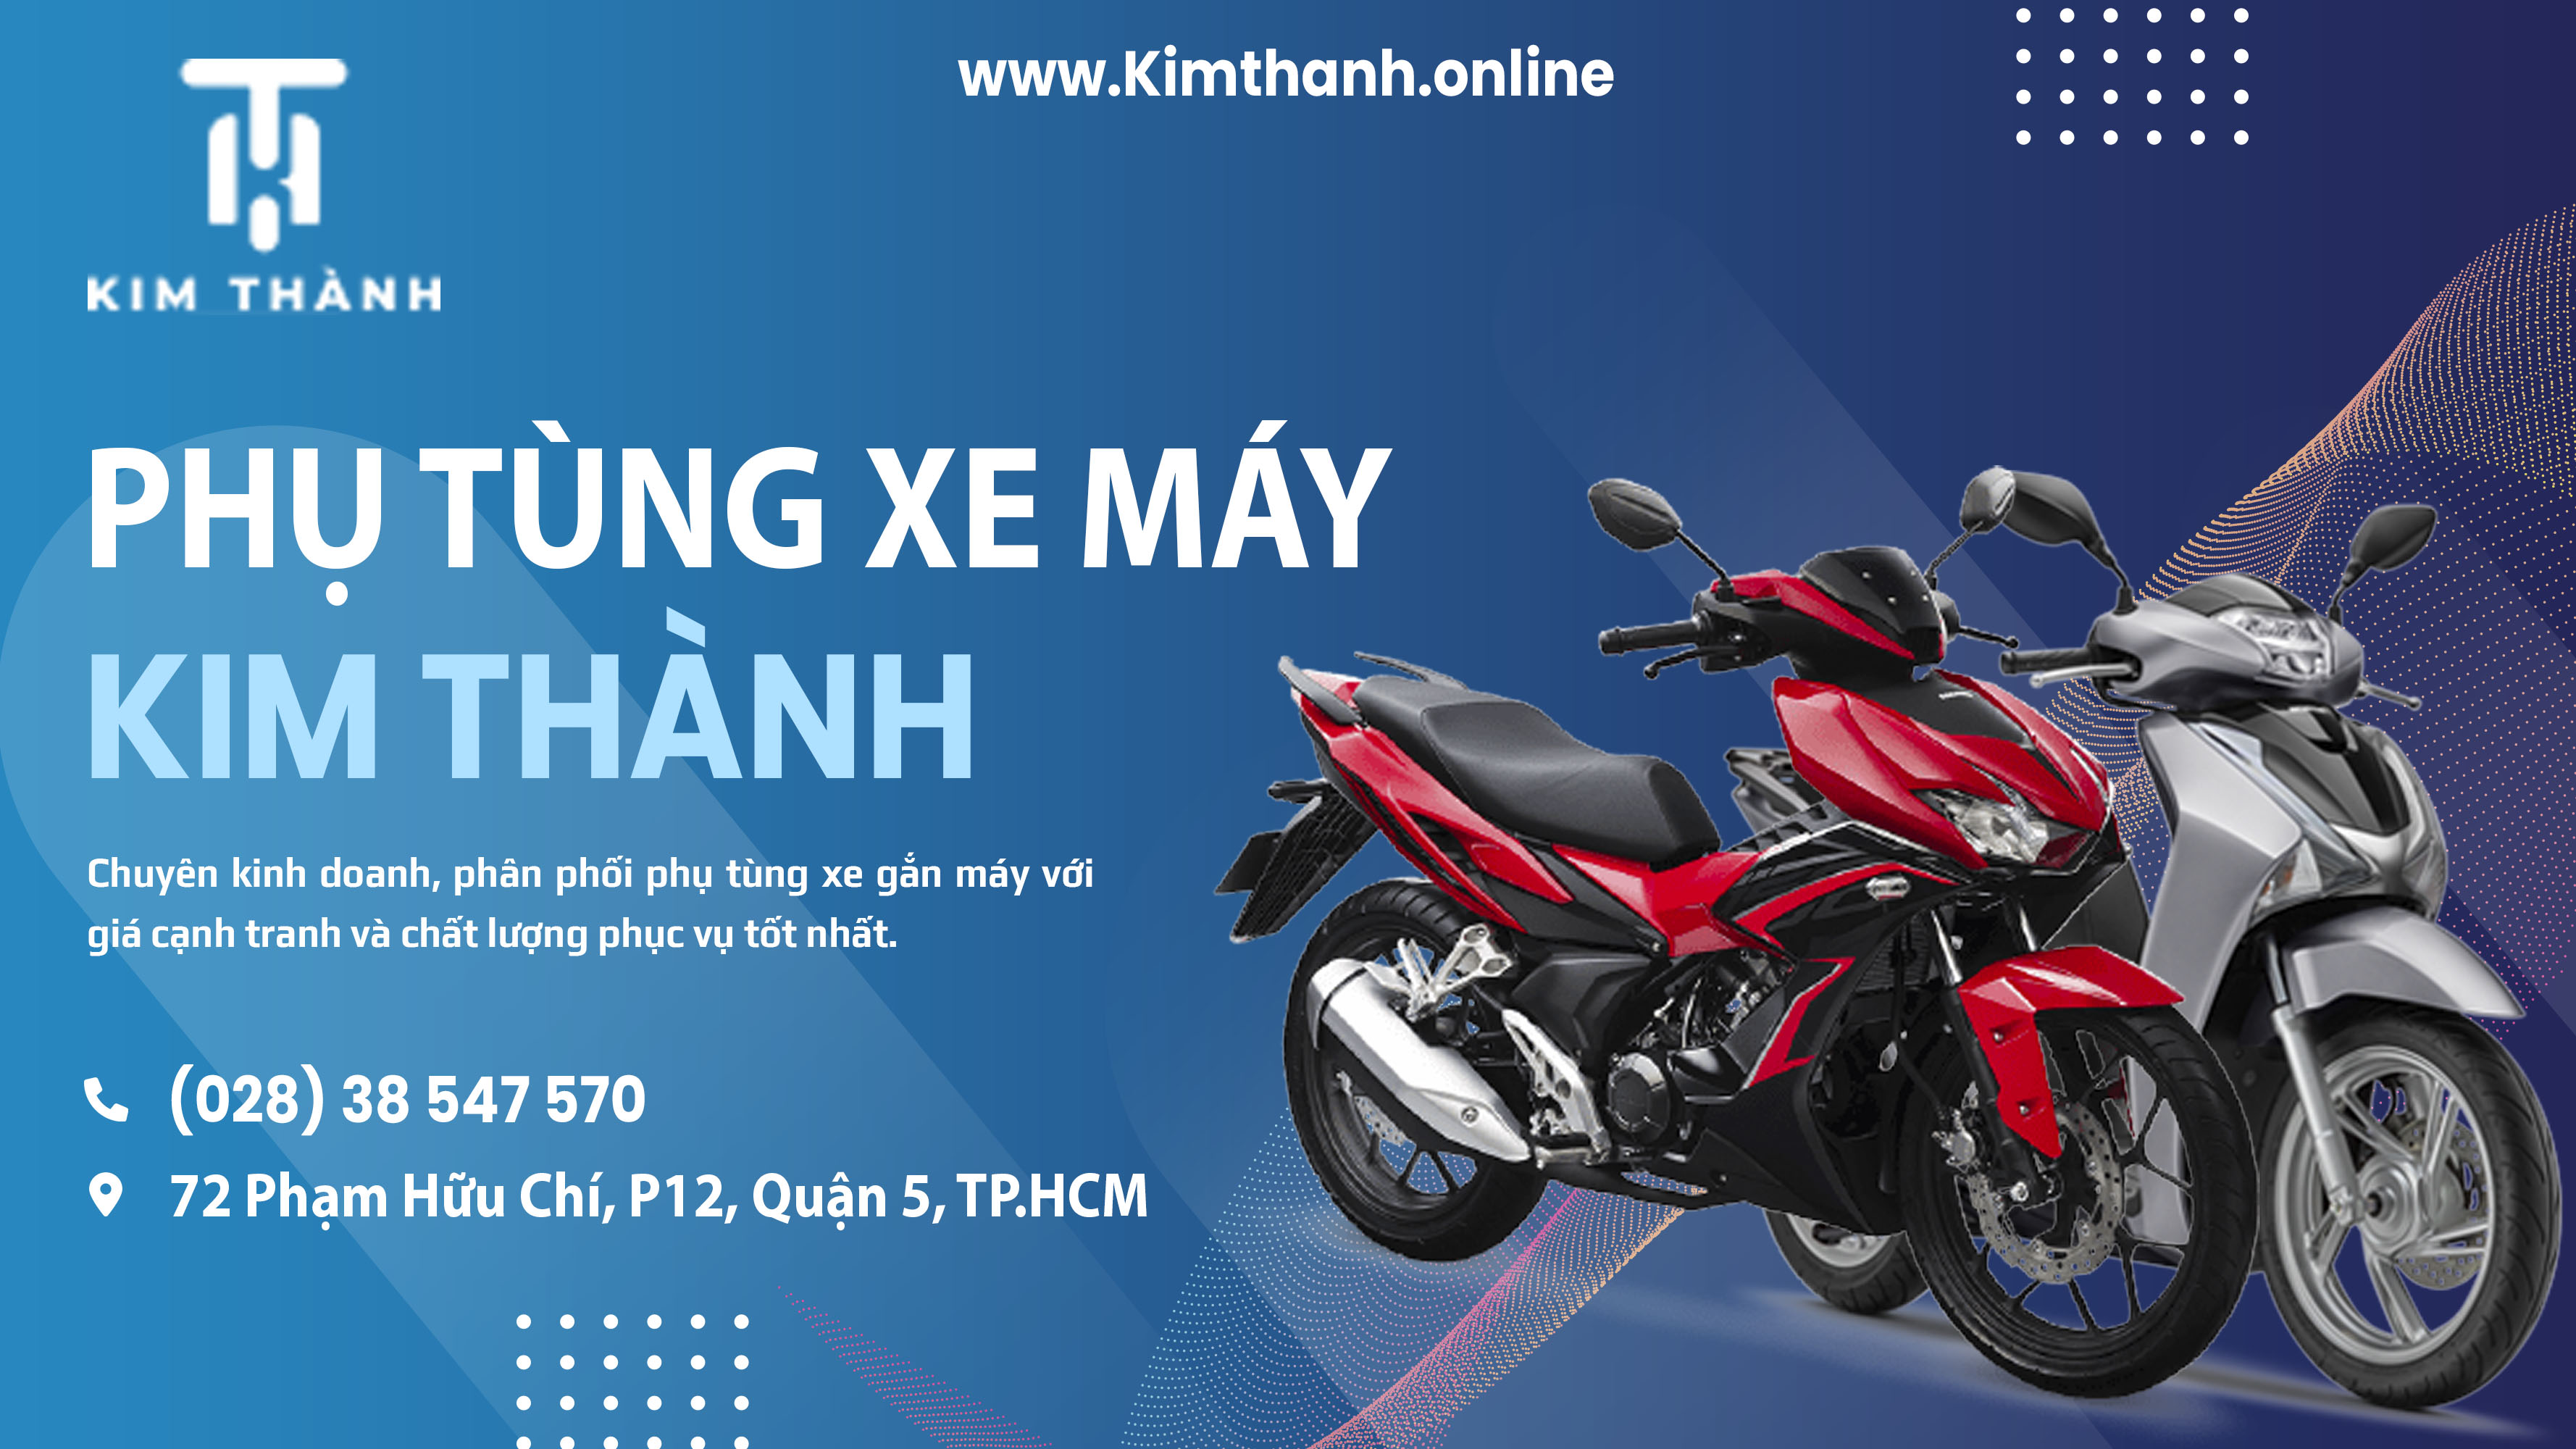 Kimthanh.online - Trang web bán phụ tùng xe máy uy tín